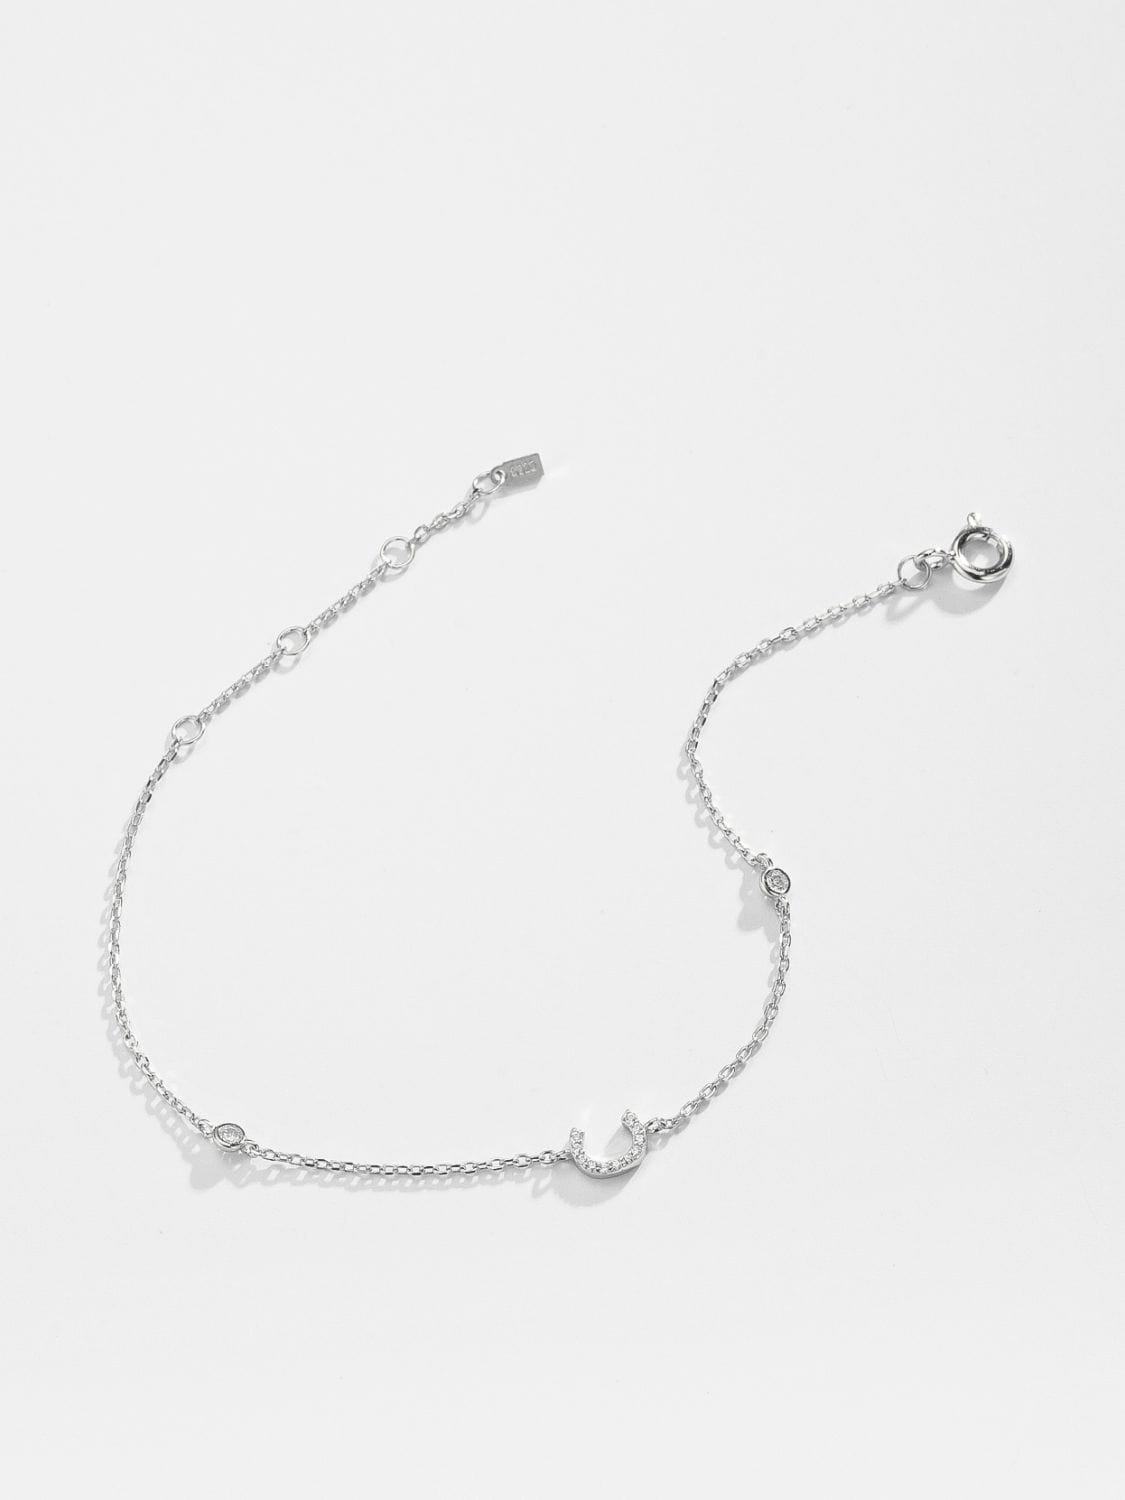 A To F Zircon 925 Sterling Silver Bracelet - CLASSY CLOSET BOUTIQUEA To F Zircon 925 Sterling Silver Braceletjewelry101300165470871101300165470871C-SilverOne Size